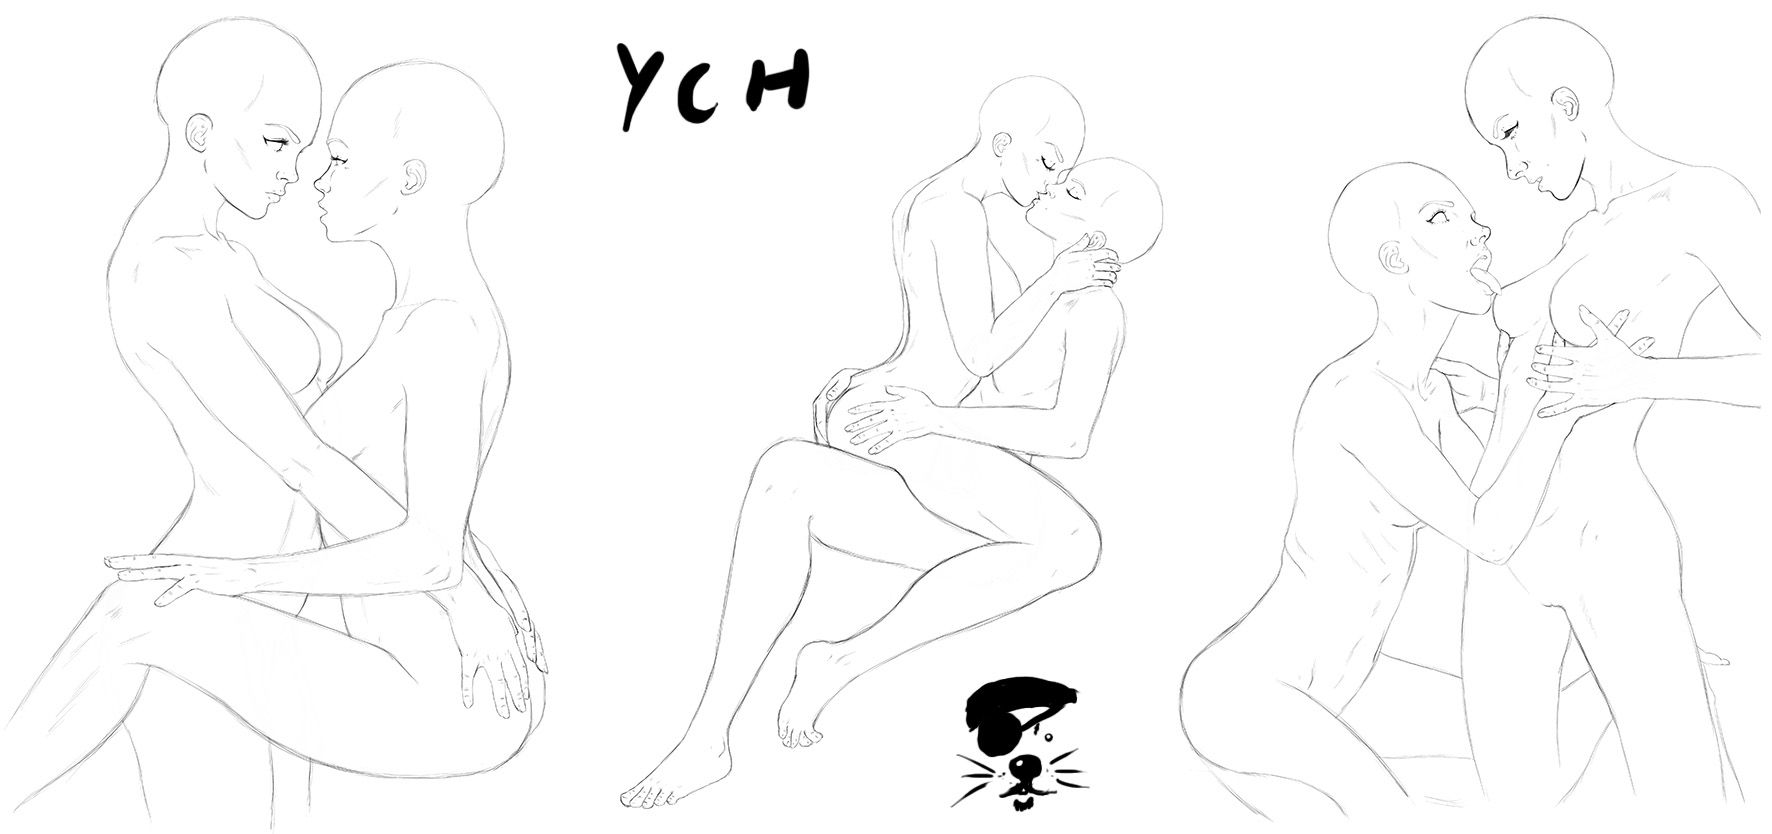 Ych Lesbians By Vanrichten Hentai Foundry